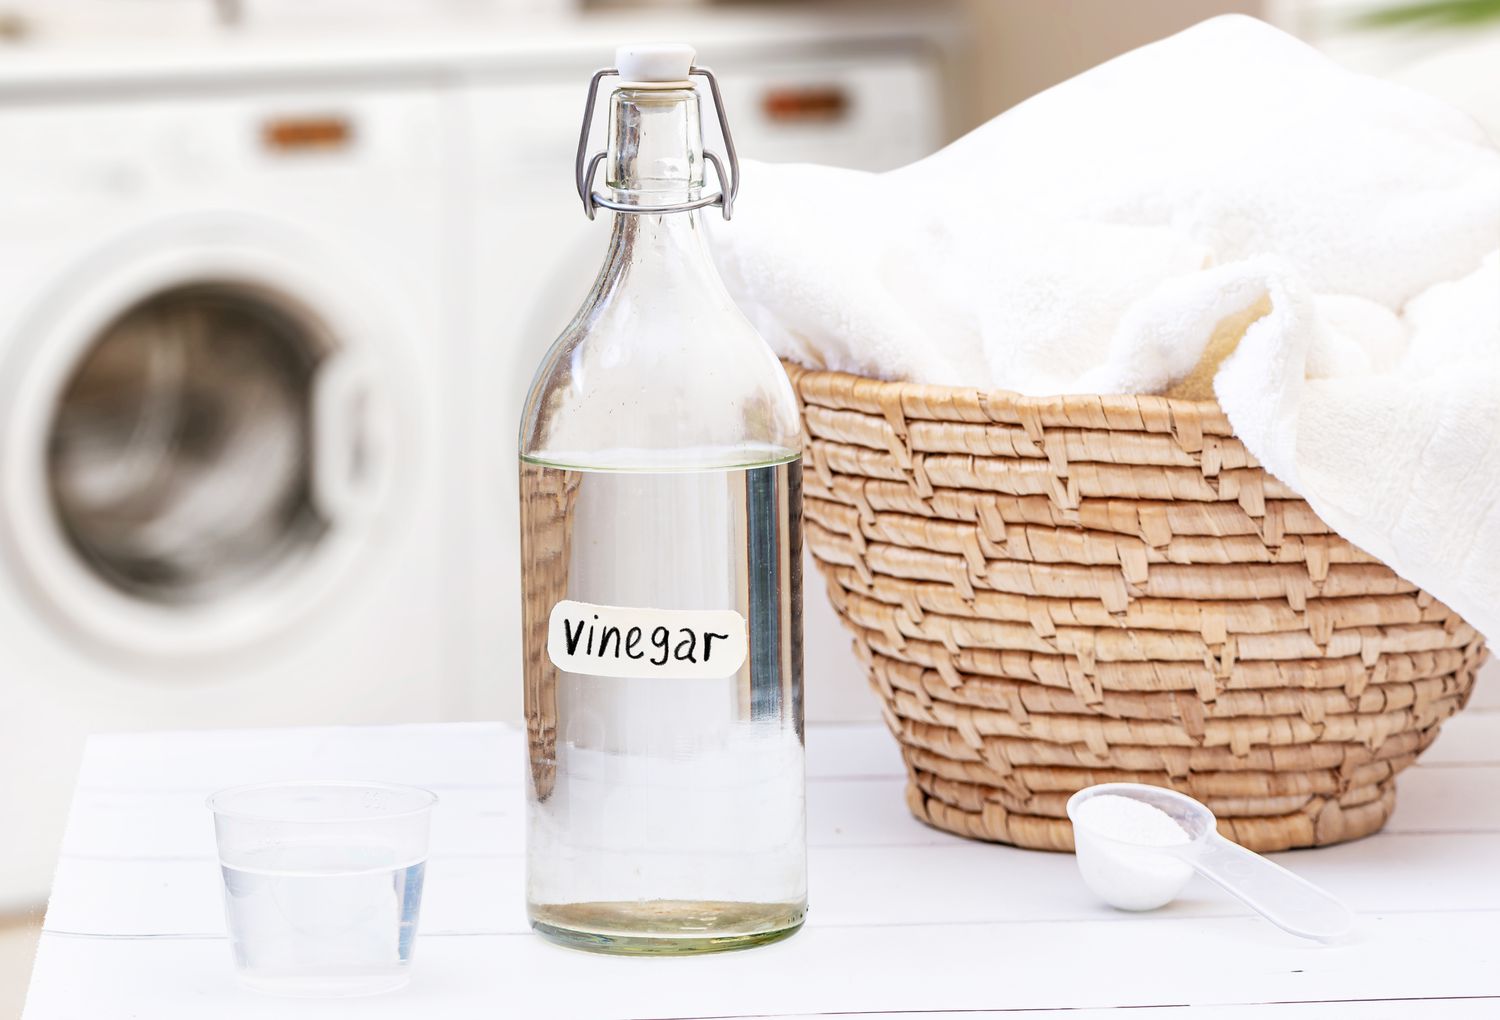 Weißer destillierter Essig in einer Flasche neben einem Wäschekorb